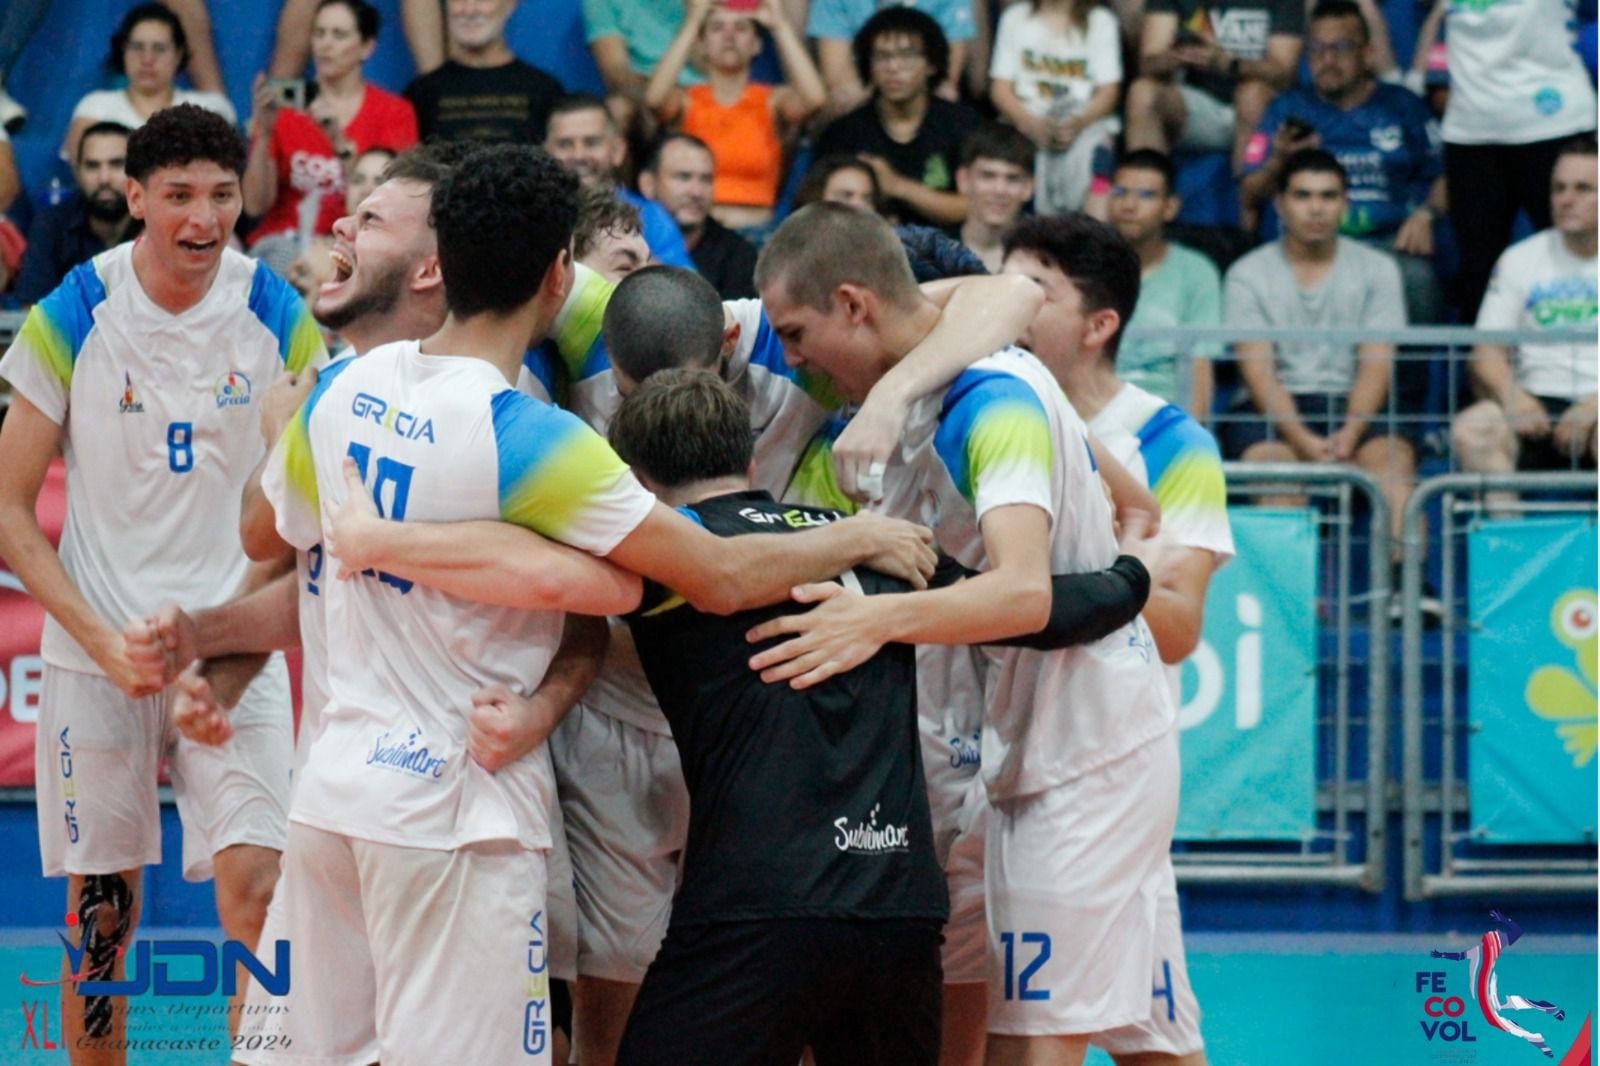 Grecia se coronó, por primera vez, campeón de los Juegos Nacionales en el  Voleibol masculino. Cortesía Icoder